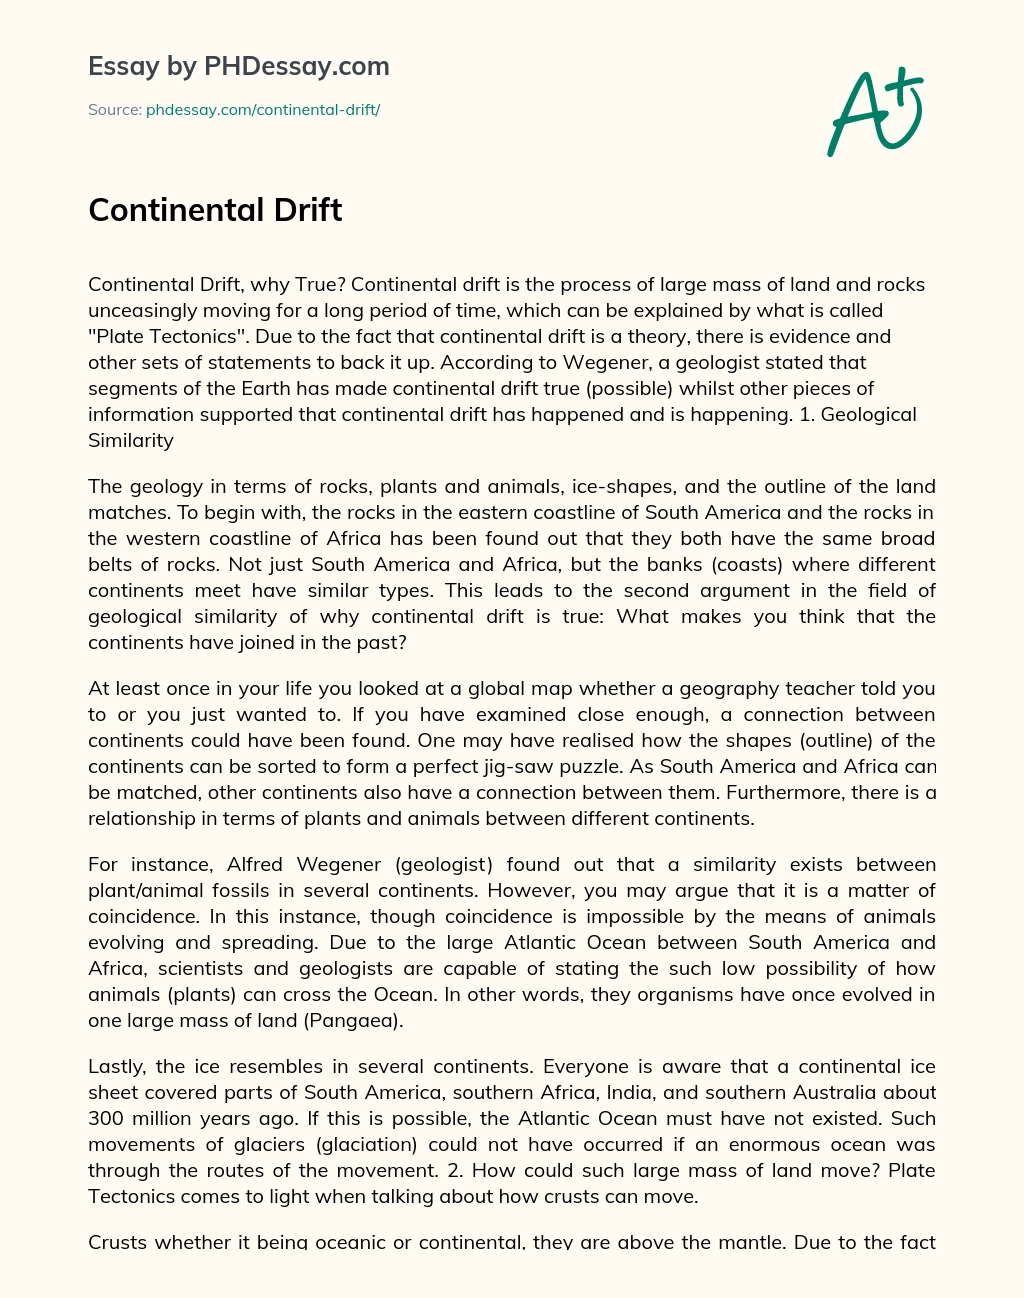 Continental Drift essay